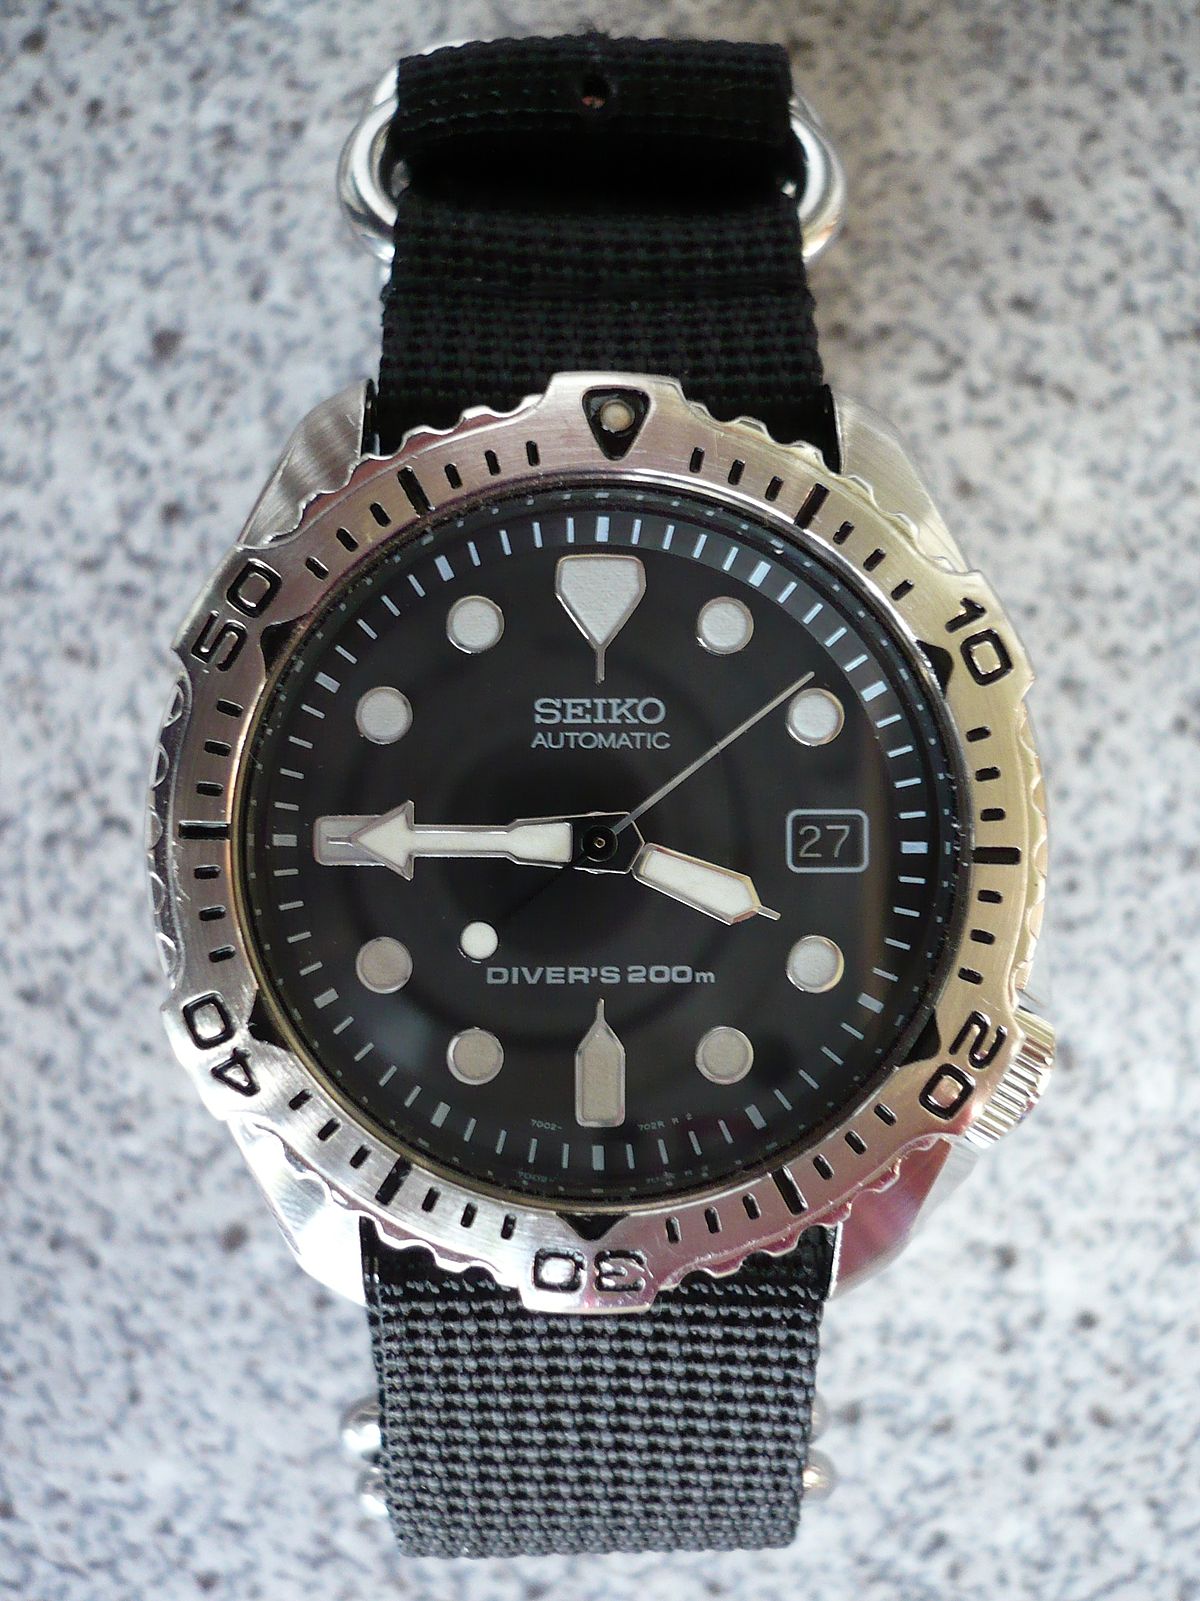 File:Seiko 7002-7020 Diver's 200 m on a 4-ring NATO style strap.JPG -  Wikipedia